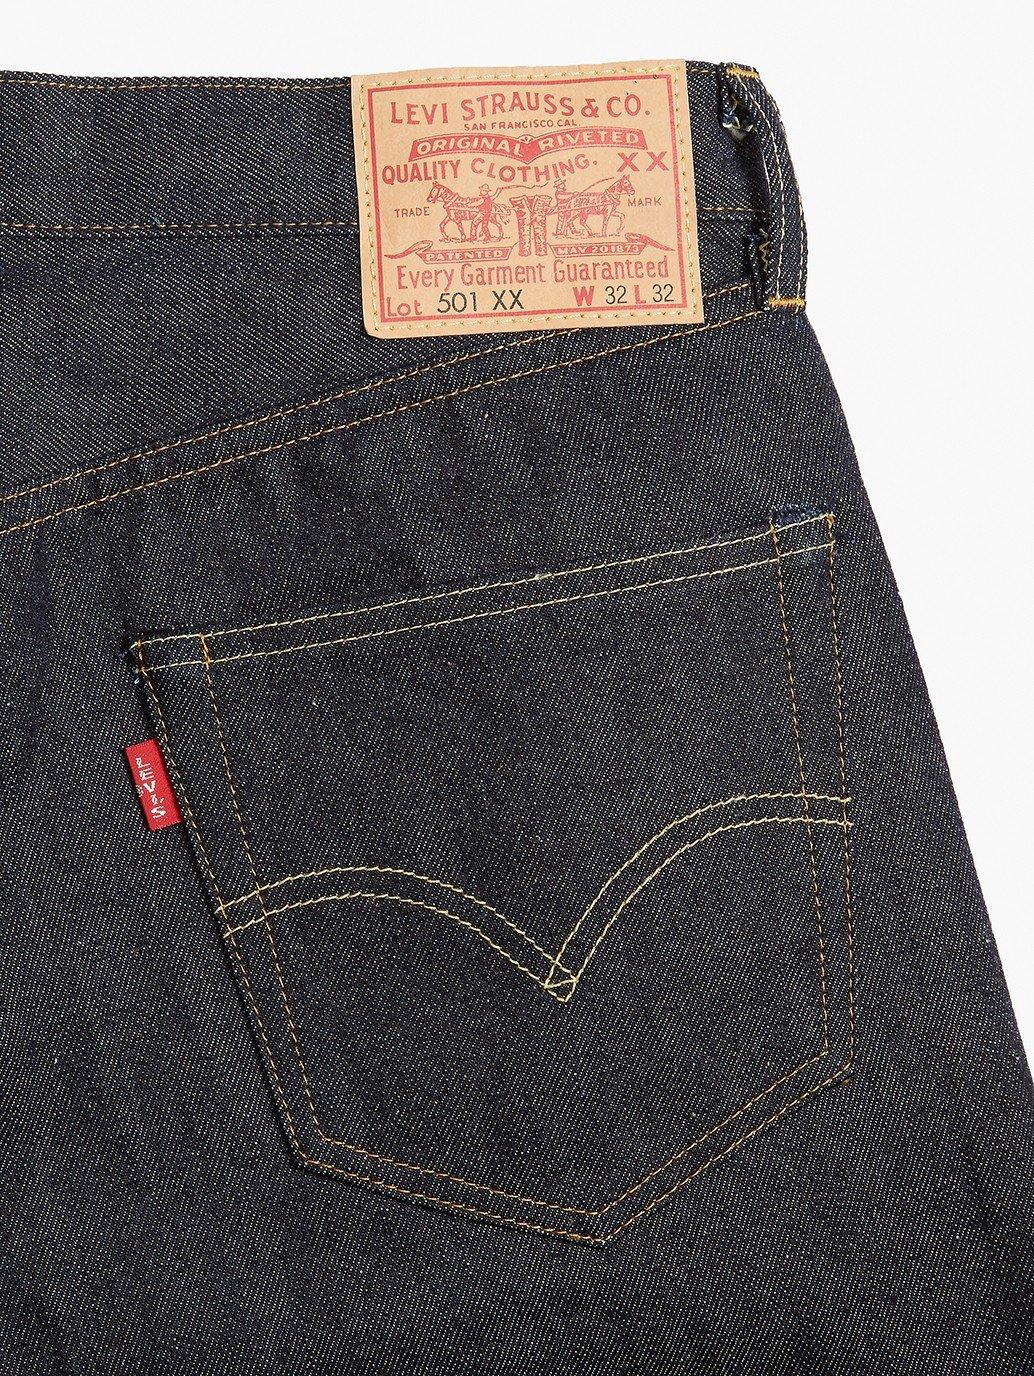 Leraar op school Detective Susteen Buy Levi's® Vintage Clothing Men's 1955 501® Jeans | Levi's® Official  Online Store PH